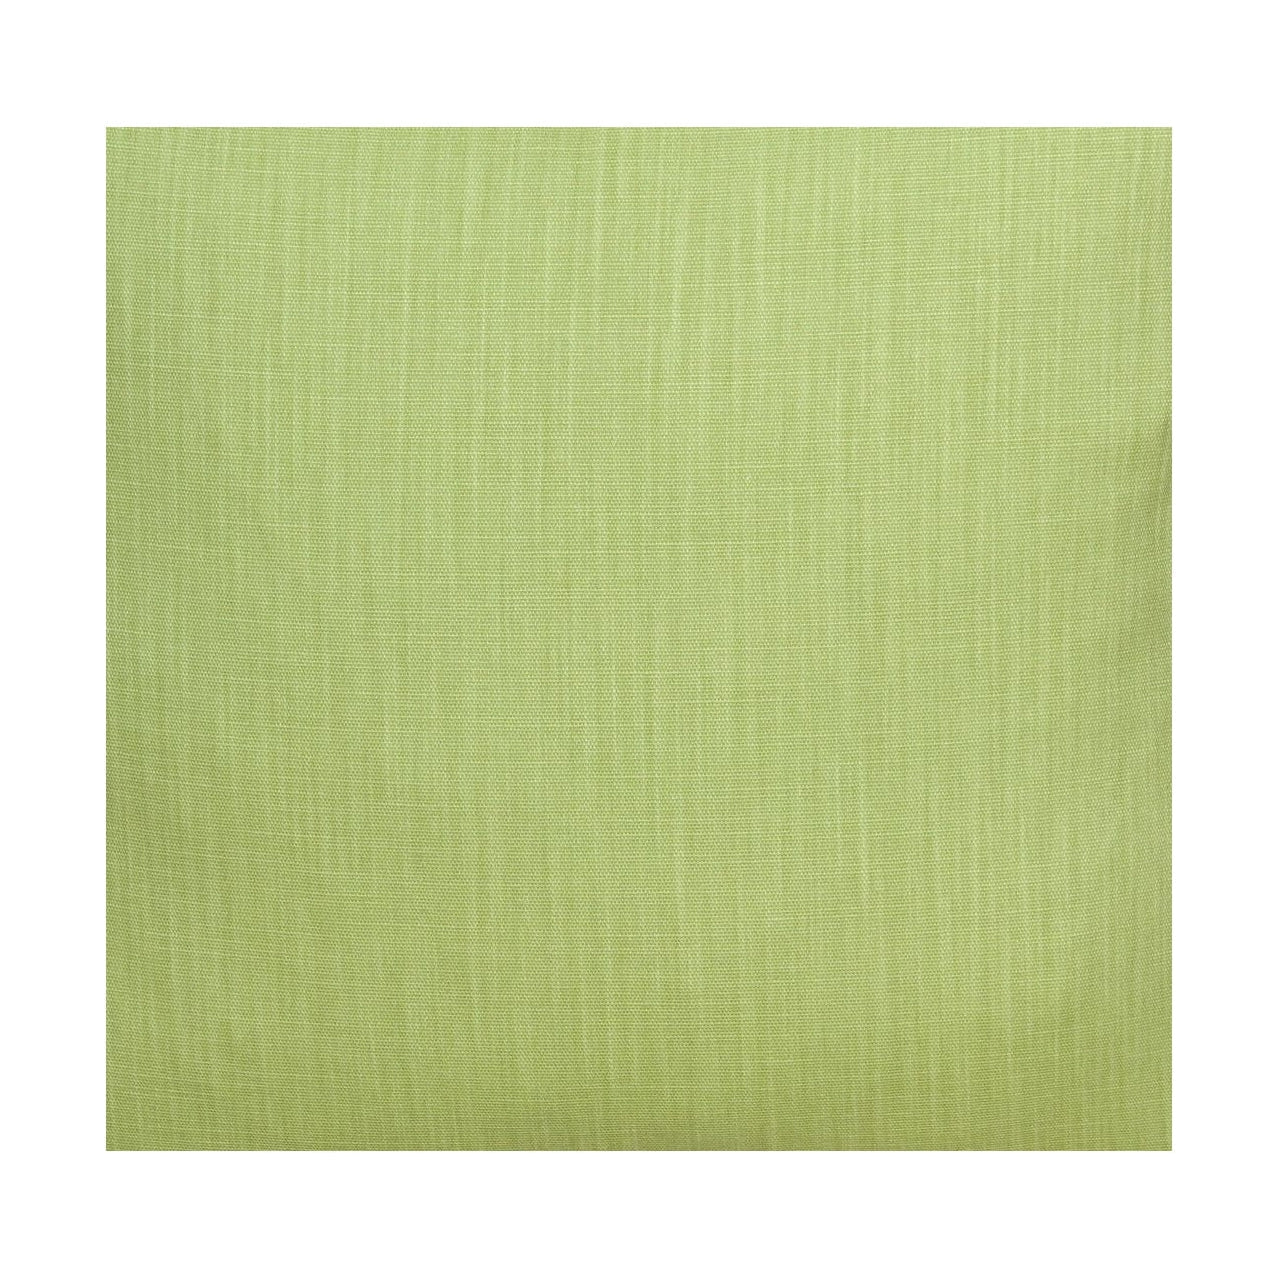 Largeur de tissu Spira Klotz 150 cm (prix par mètre), vert clair